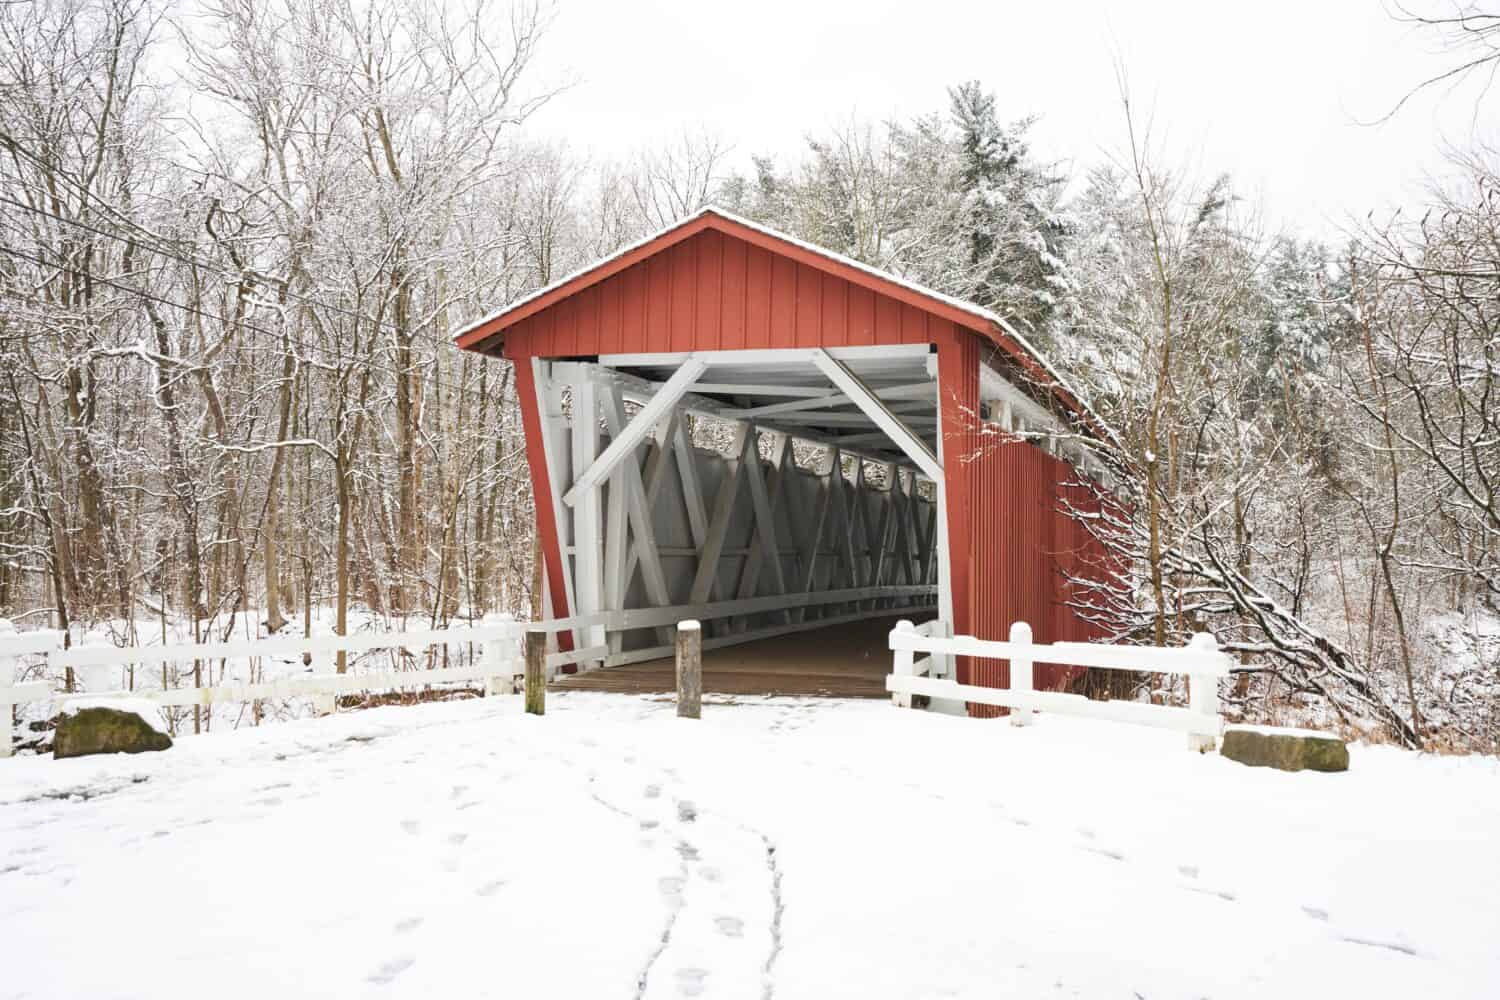 La strada di everett ha coperto il ponte nel parco nazionale della valle di Cuyahoga.  Il ponte è rosso con interni bianchi.  È una giornata nevosa e gli alberi vicini nella foresta sono ricoperti di soffice bianco.